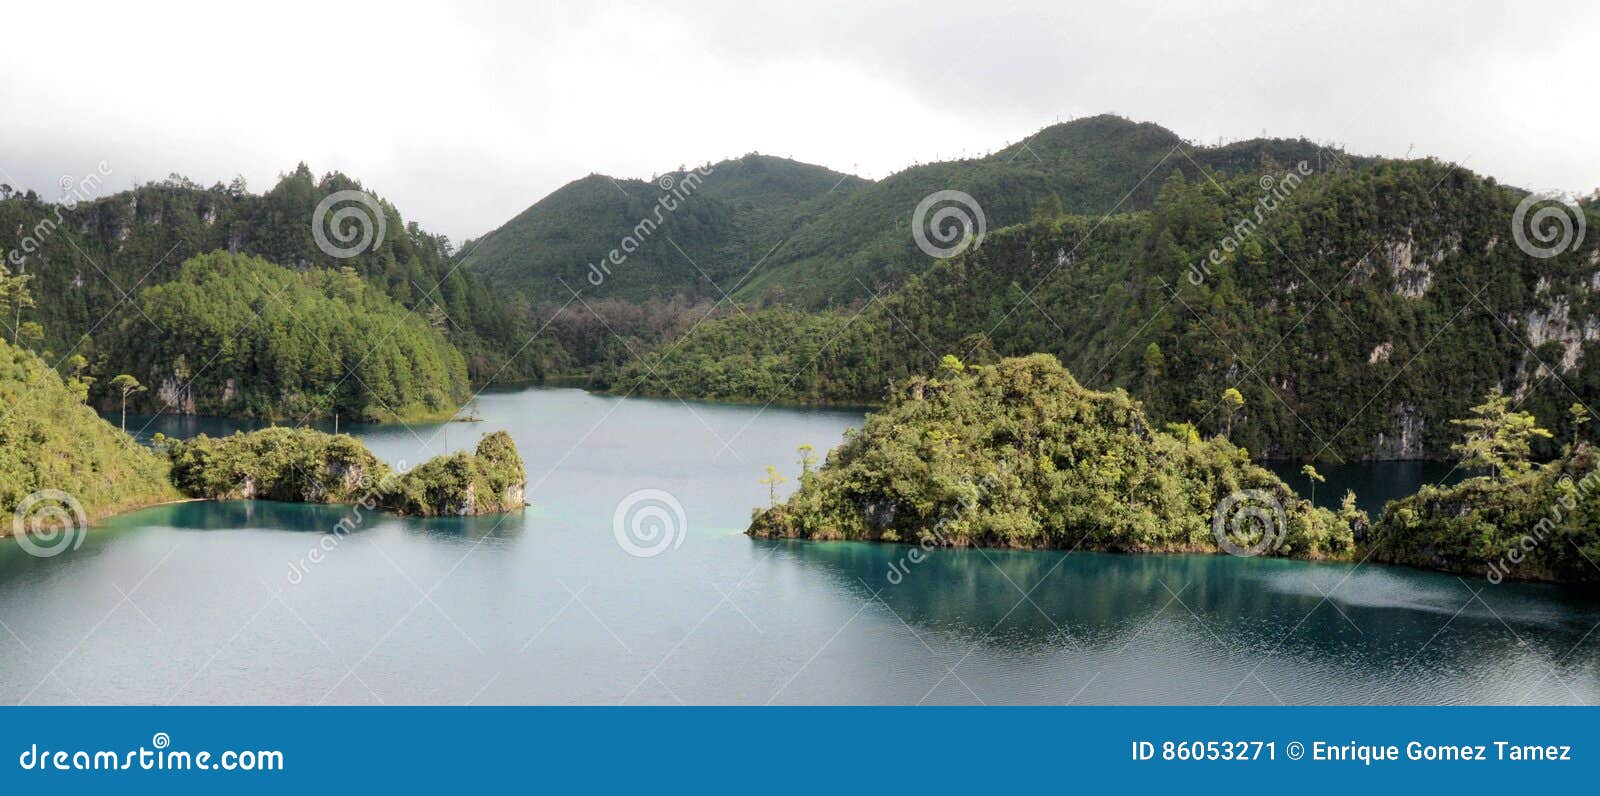 montebello lakes